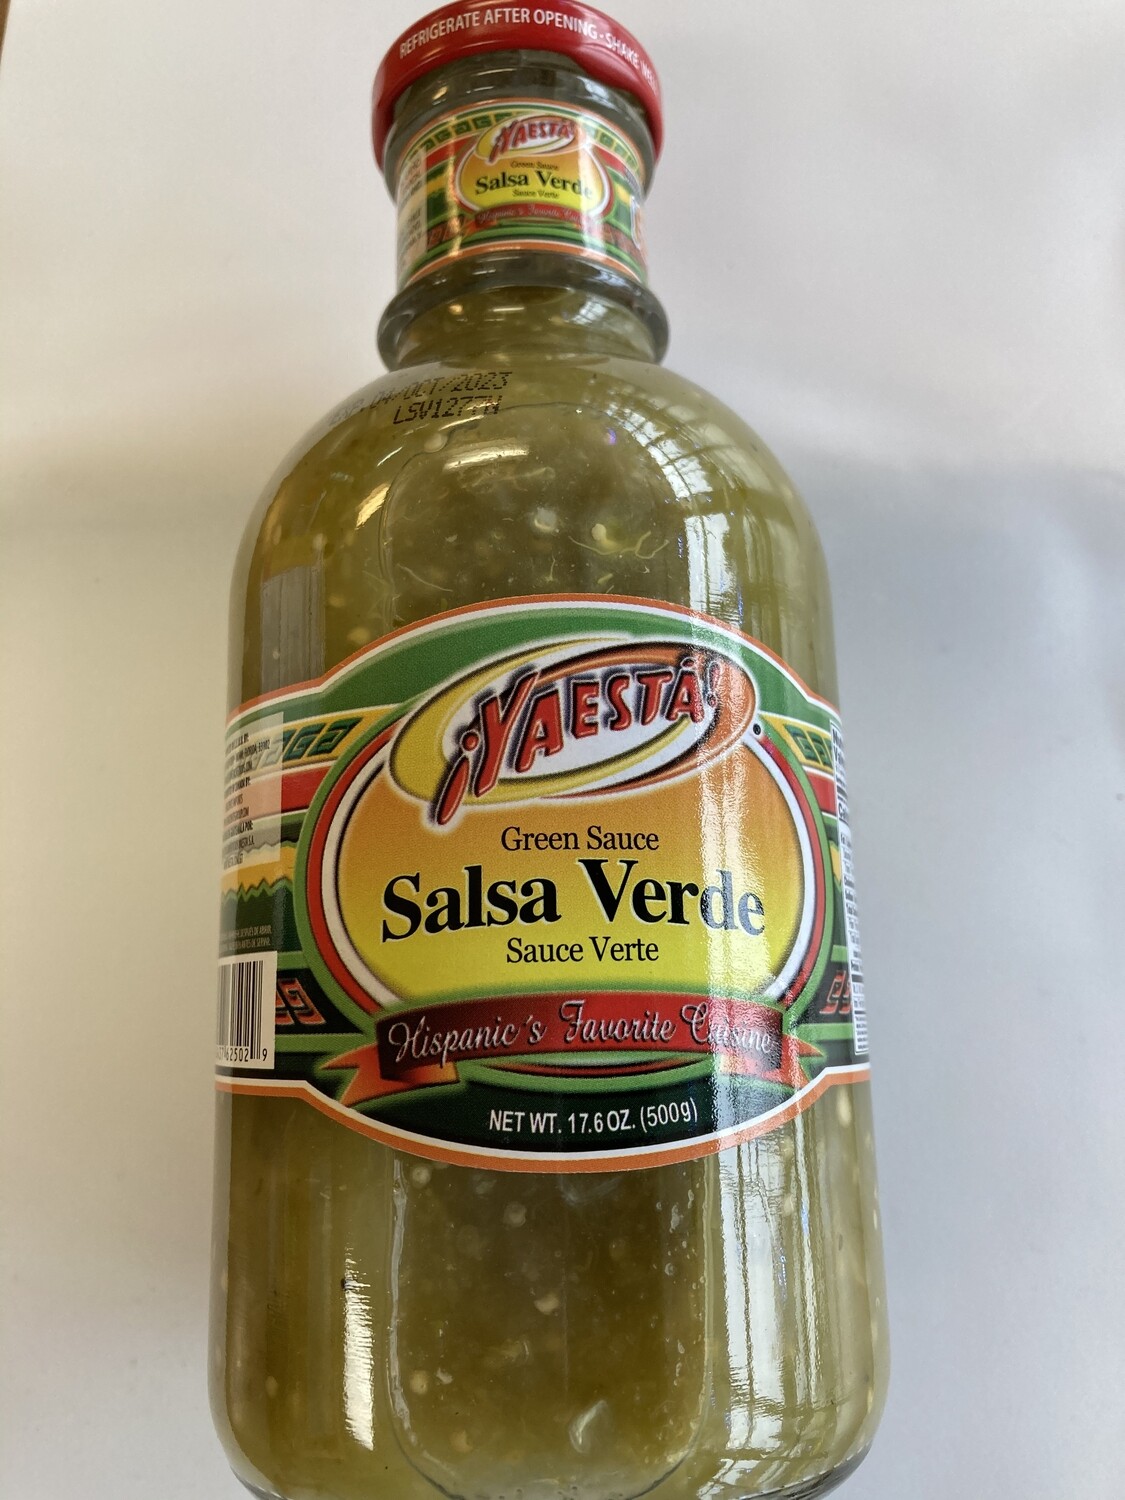 Yaesta Salsa Verde - Medium Spicy
500 g